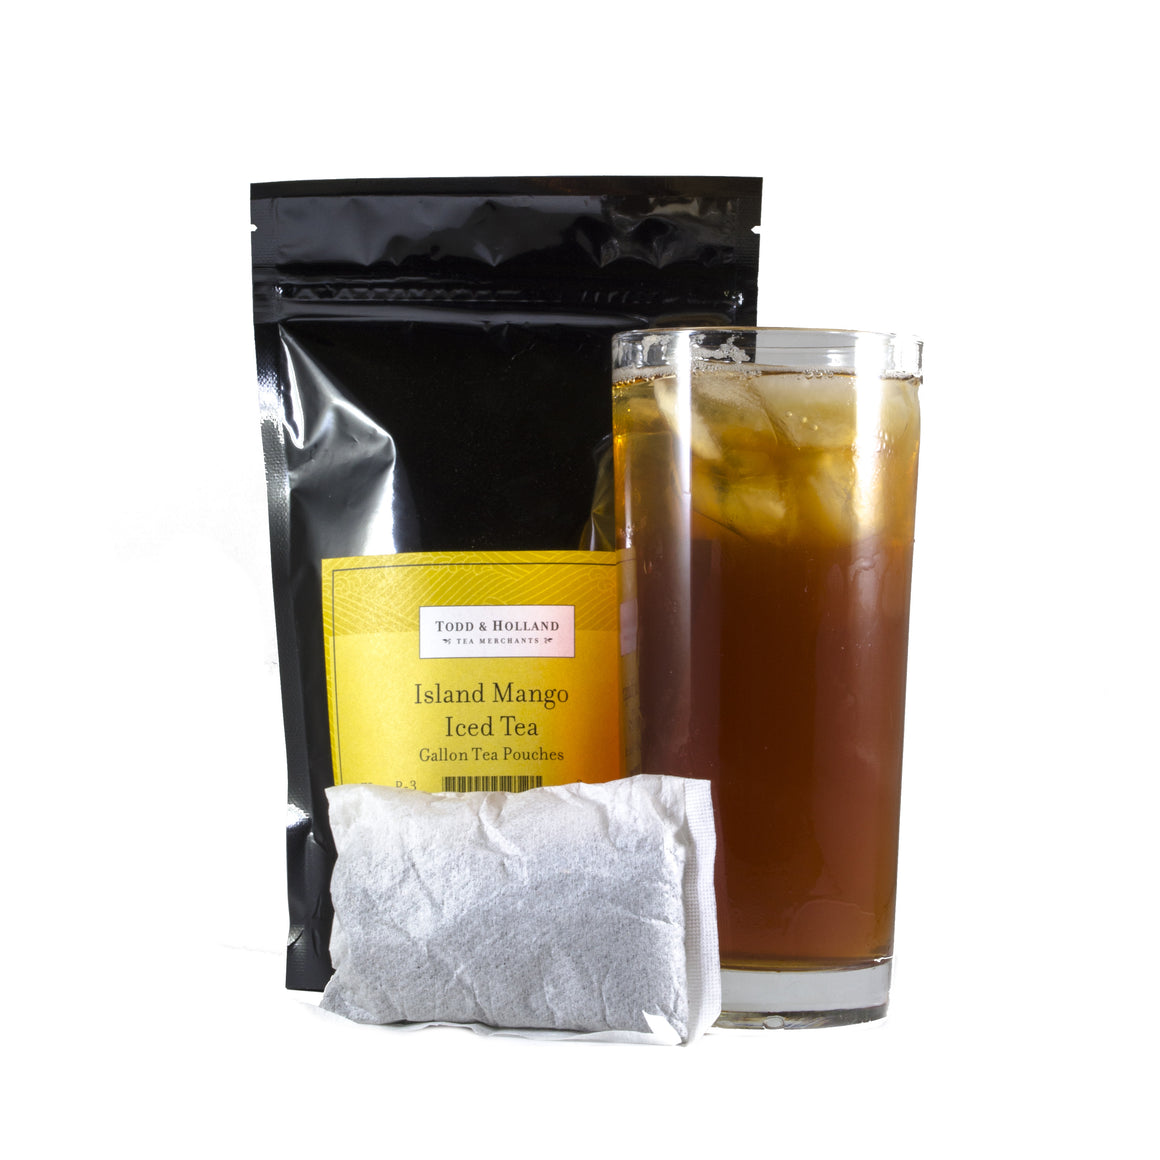 Island Mango Iced Tea Gallon Pouches - Todd & Holland Tea Merchants